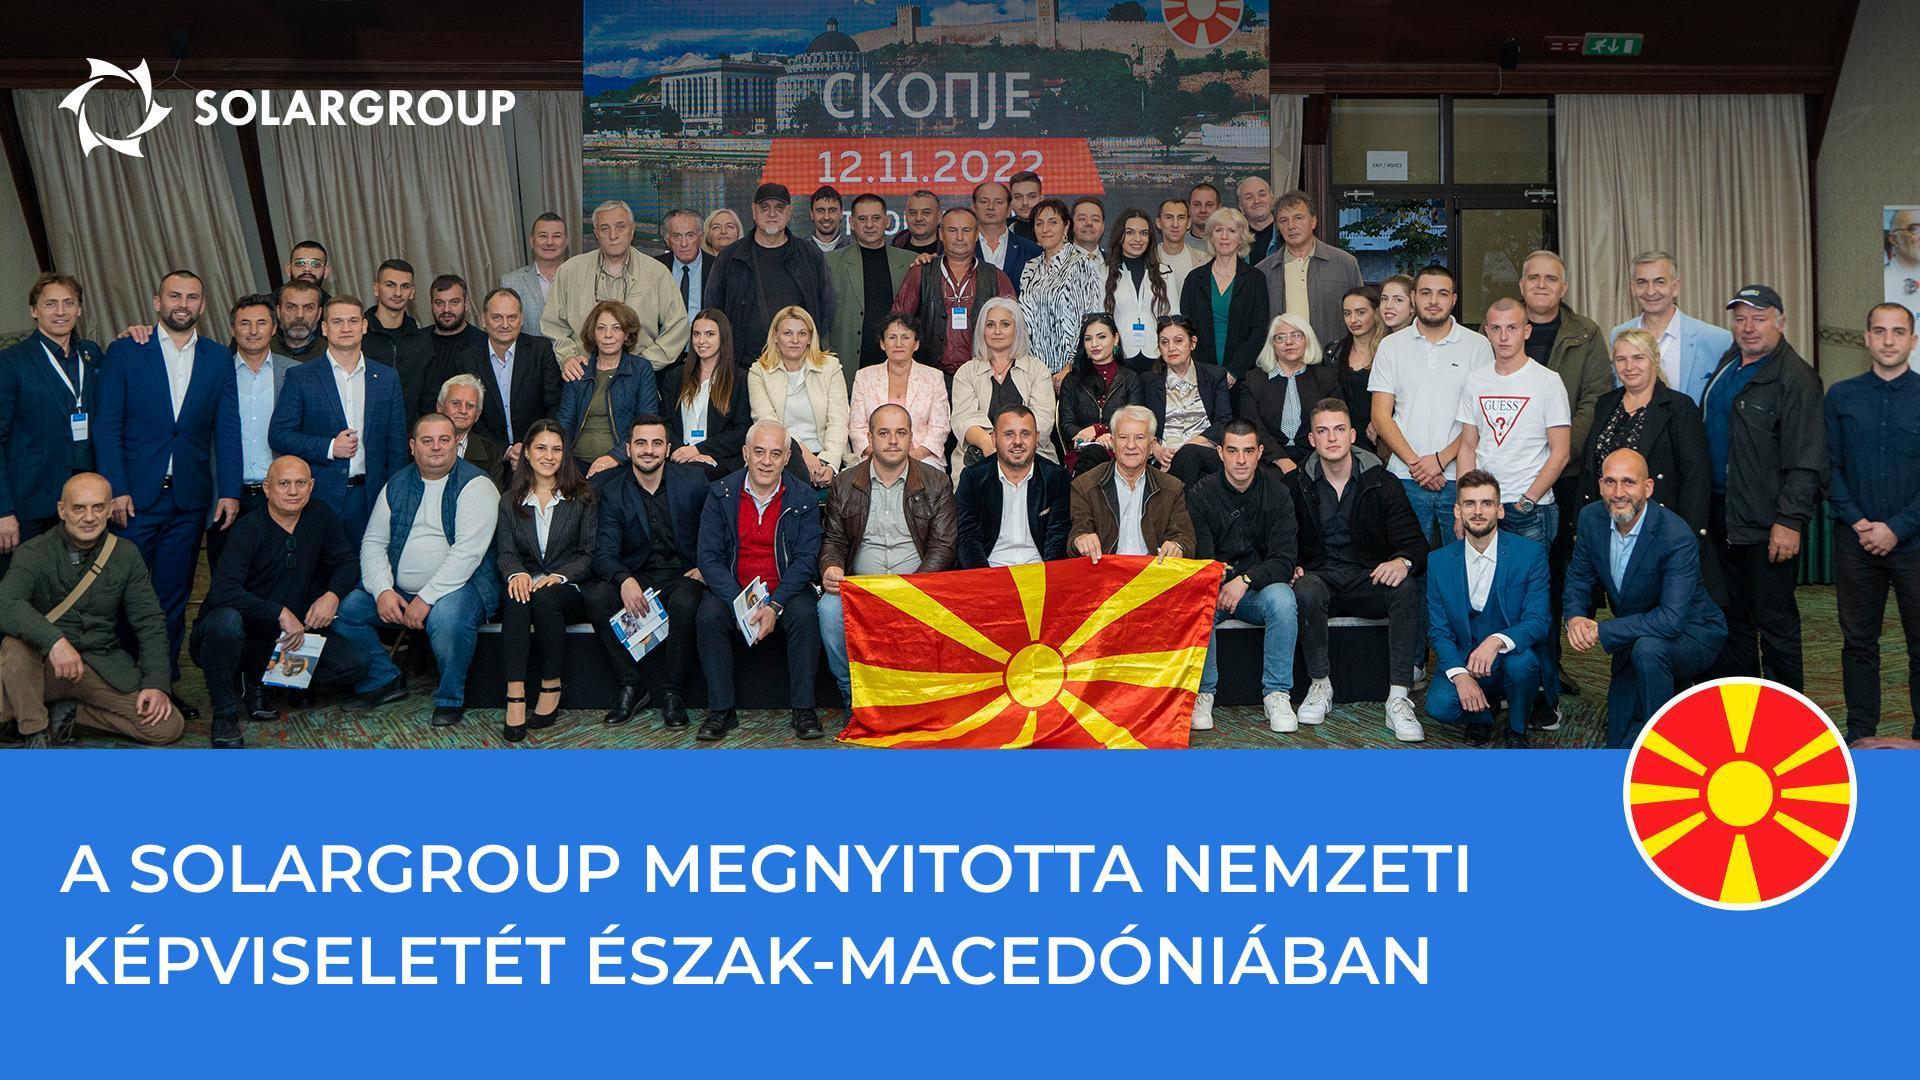 SOLARGROUP konferencia Észak-Macedóniában: legemlékezetesebb pillanatok